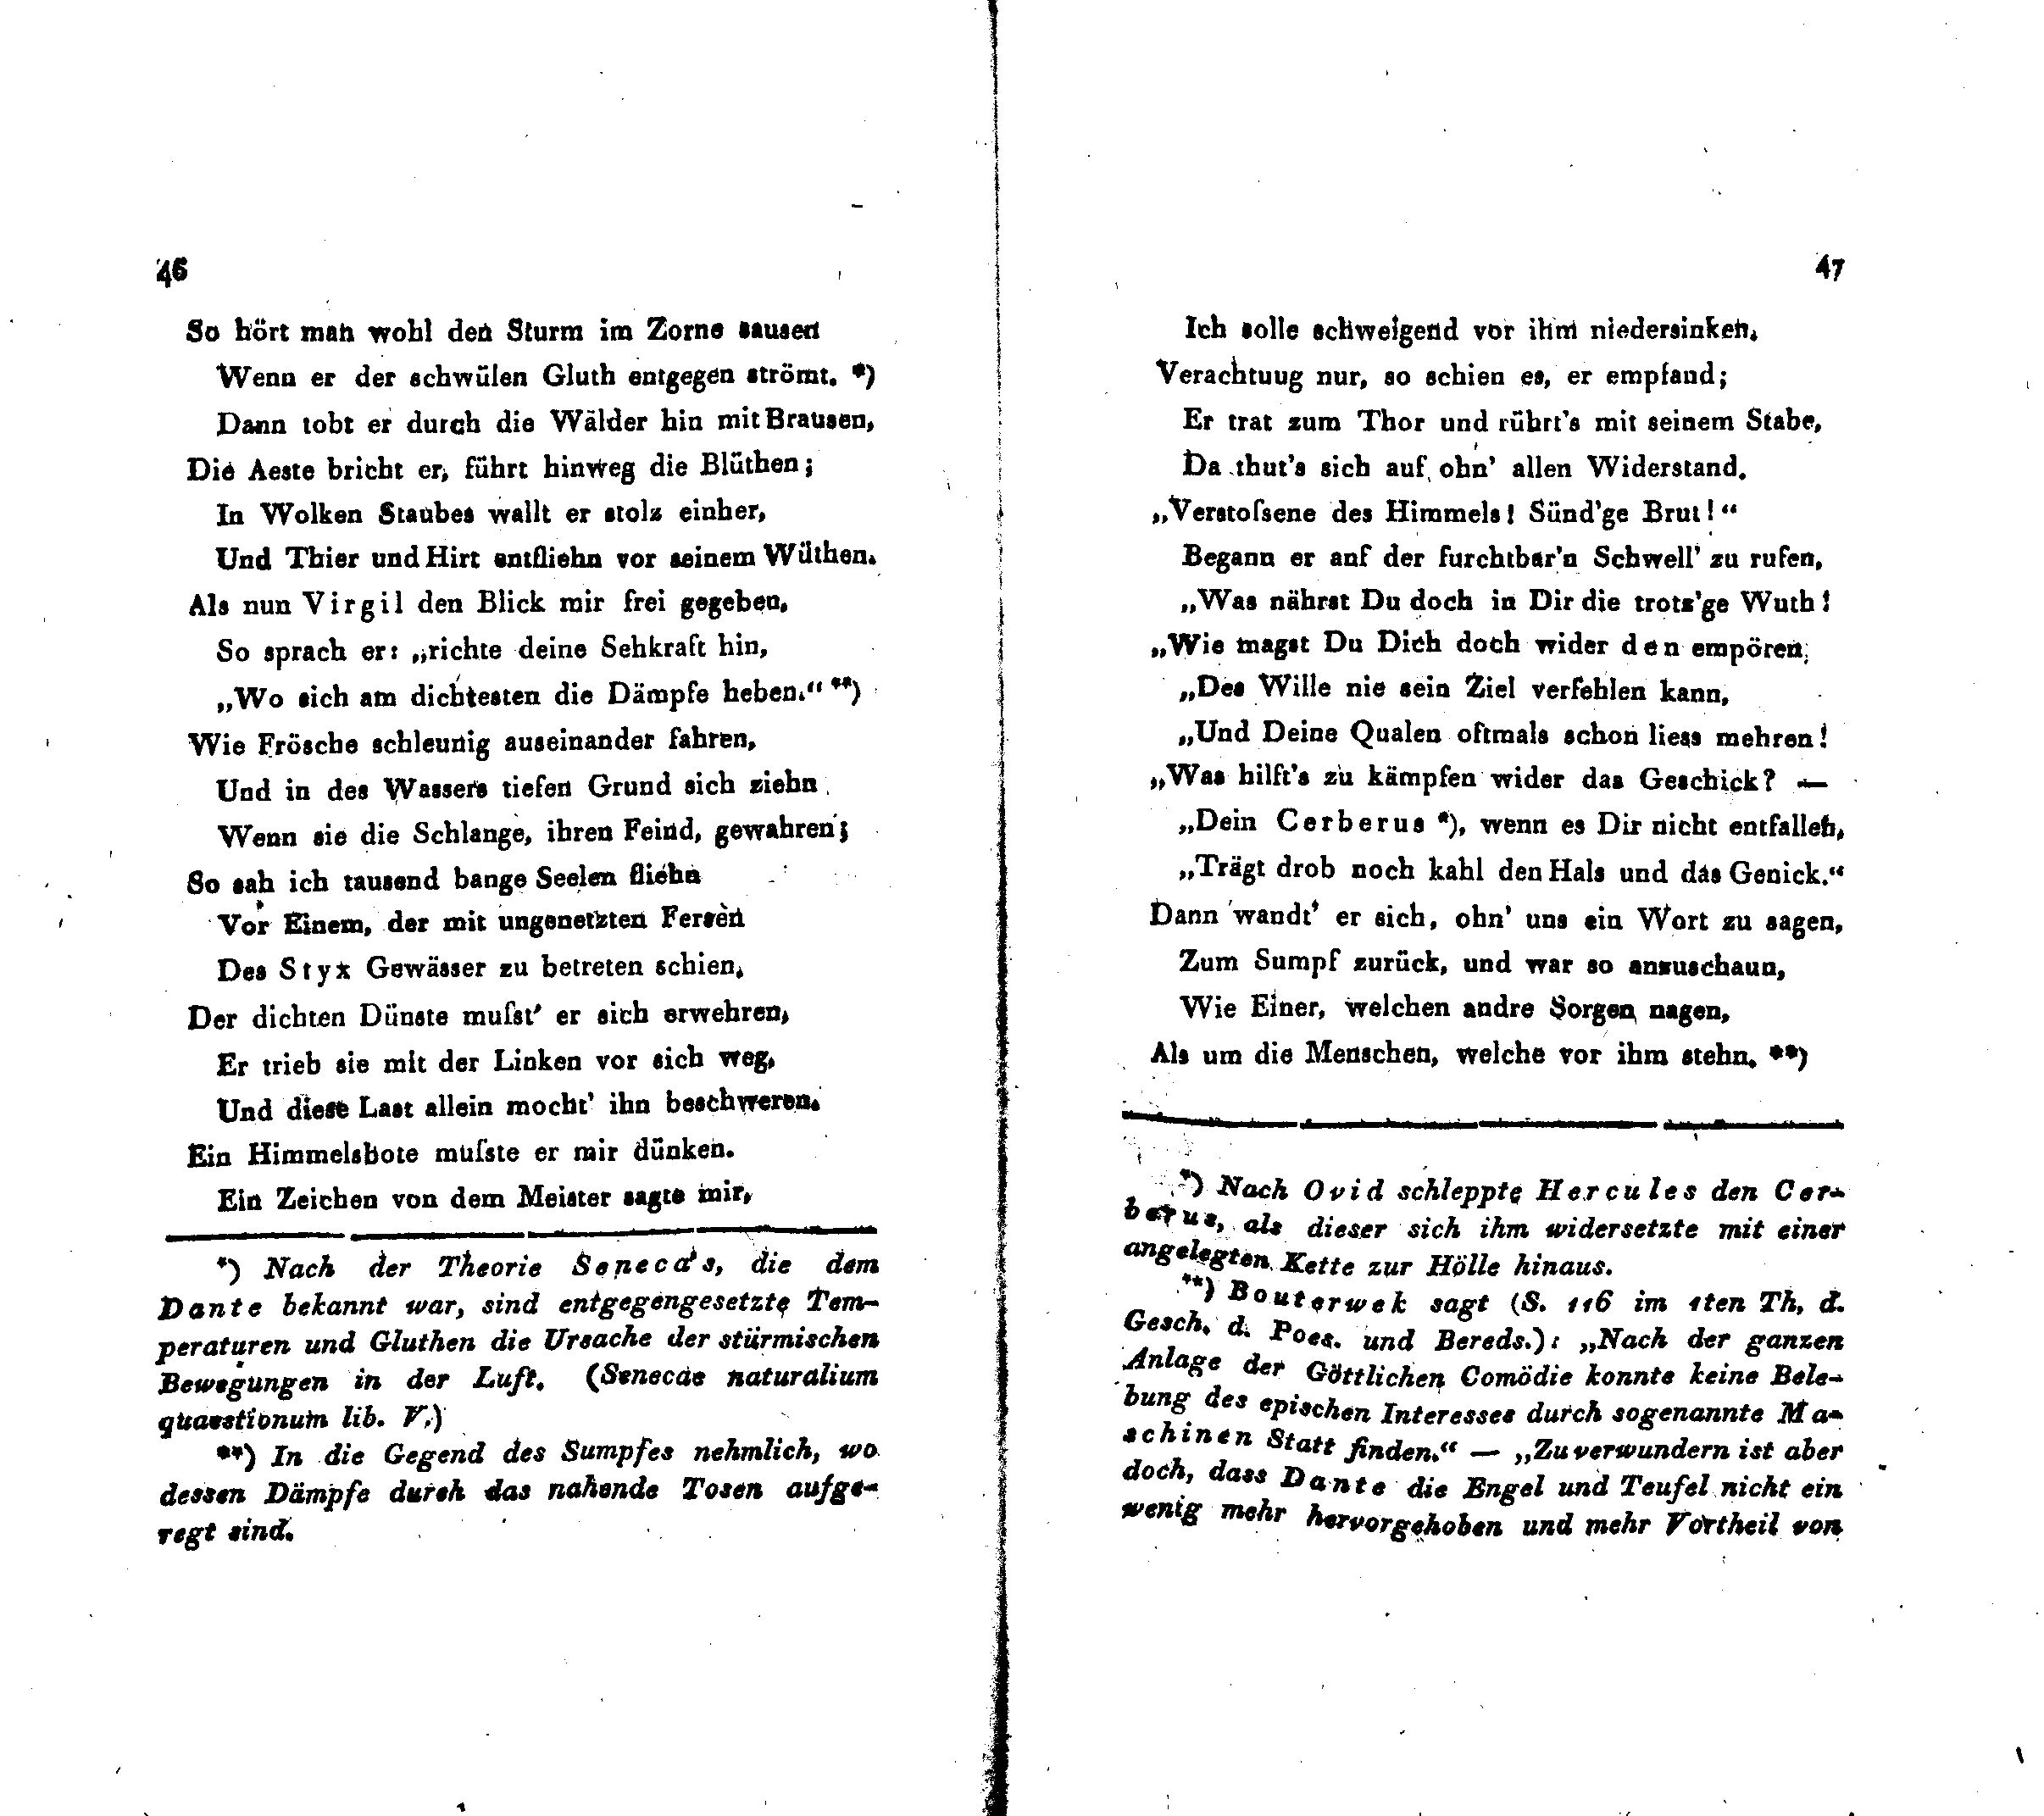 Ueber Dante Alighieri, seine Zeit und seine Divina Comedia (1824 – 1825) | 24. (46-47) Основной текст